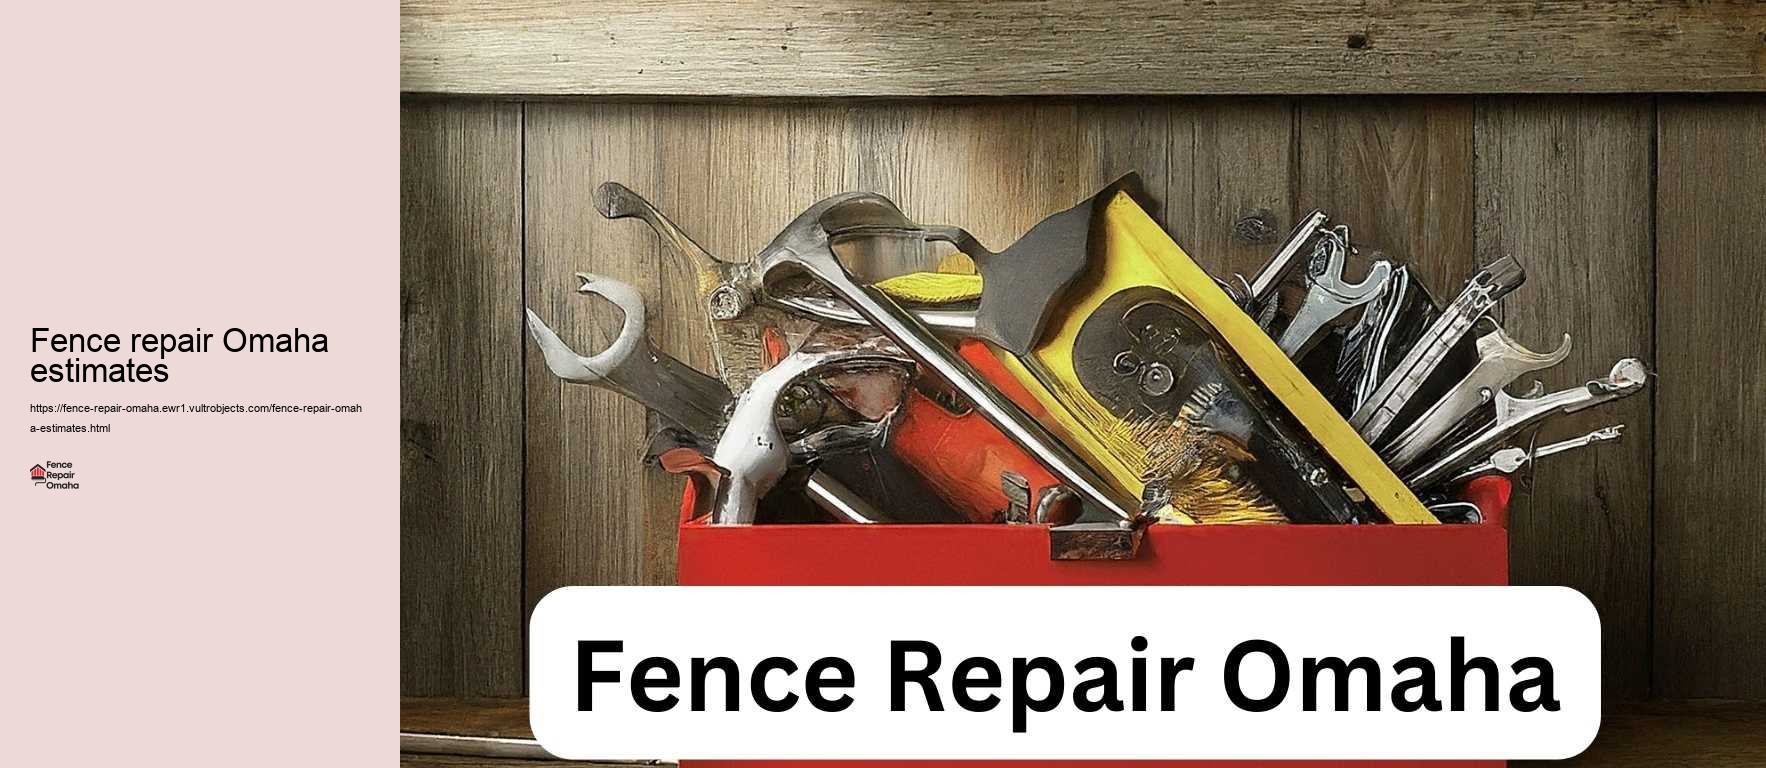 Fence repair Omaha estimates